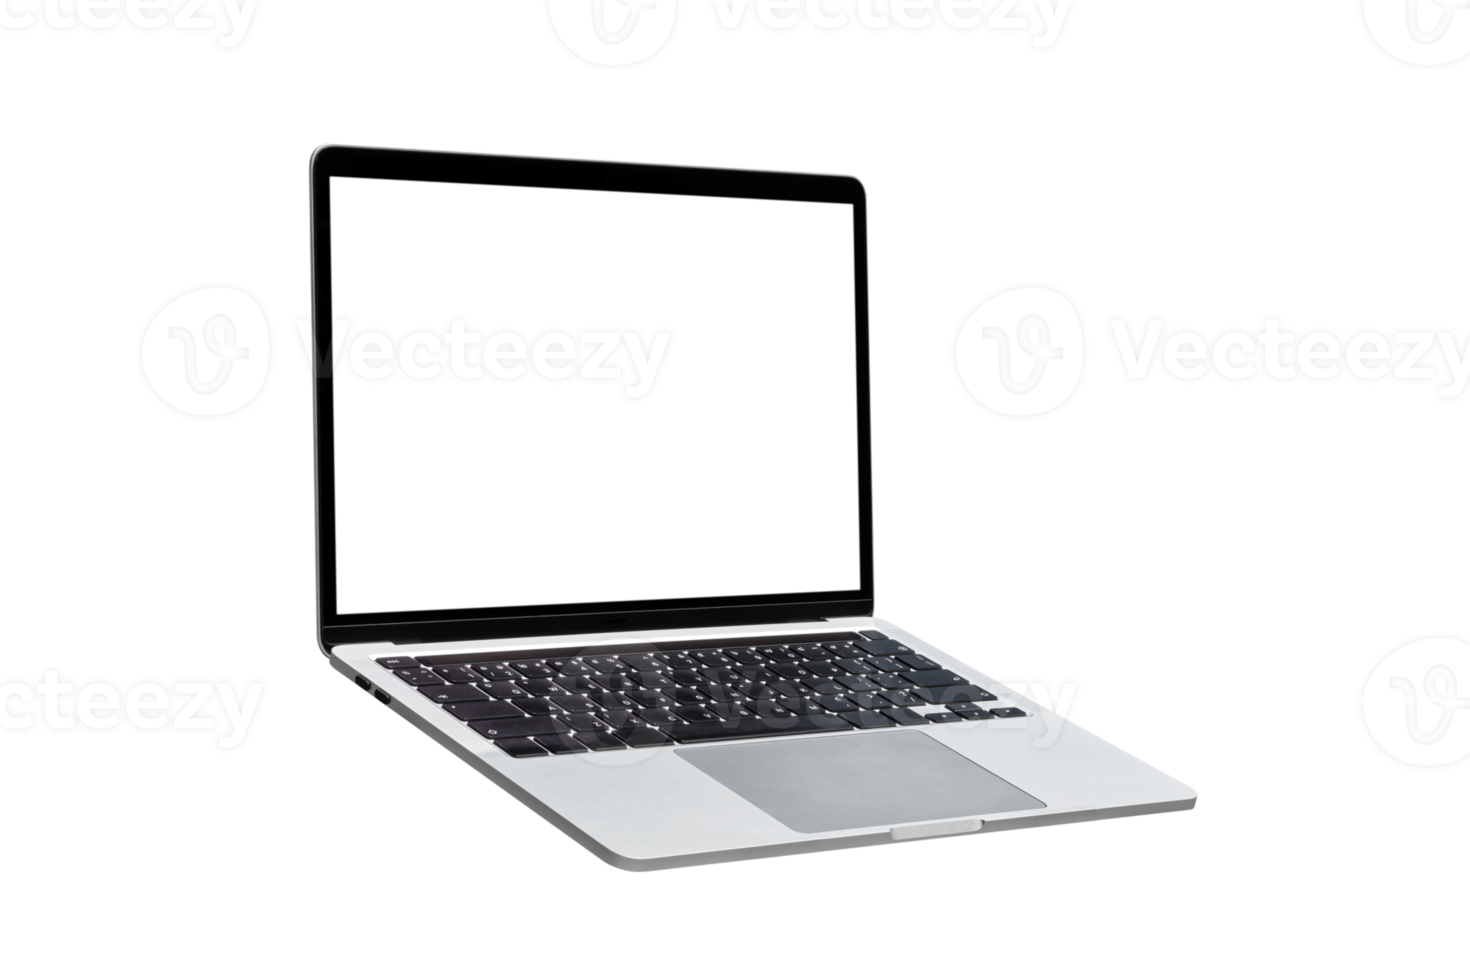 computadora portátil o notebook con pantalla en blanco png